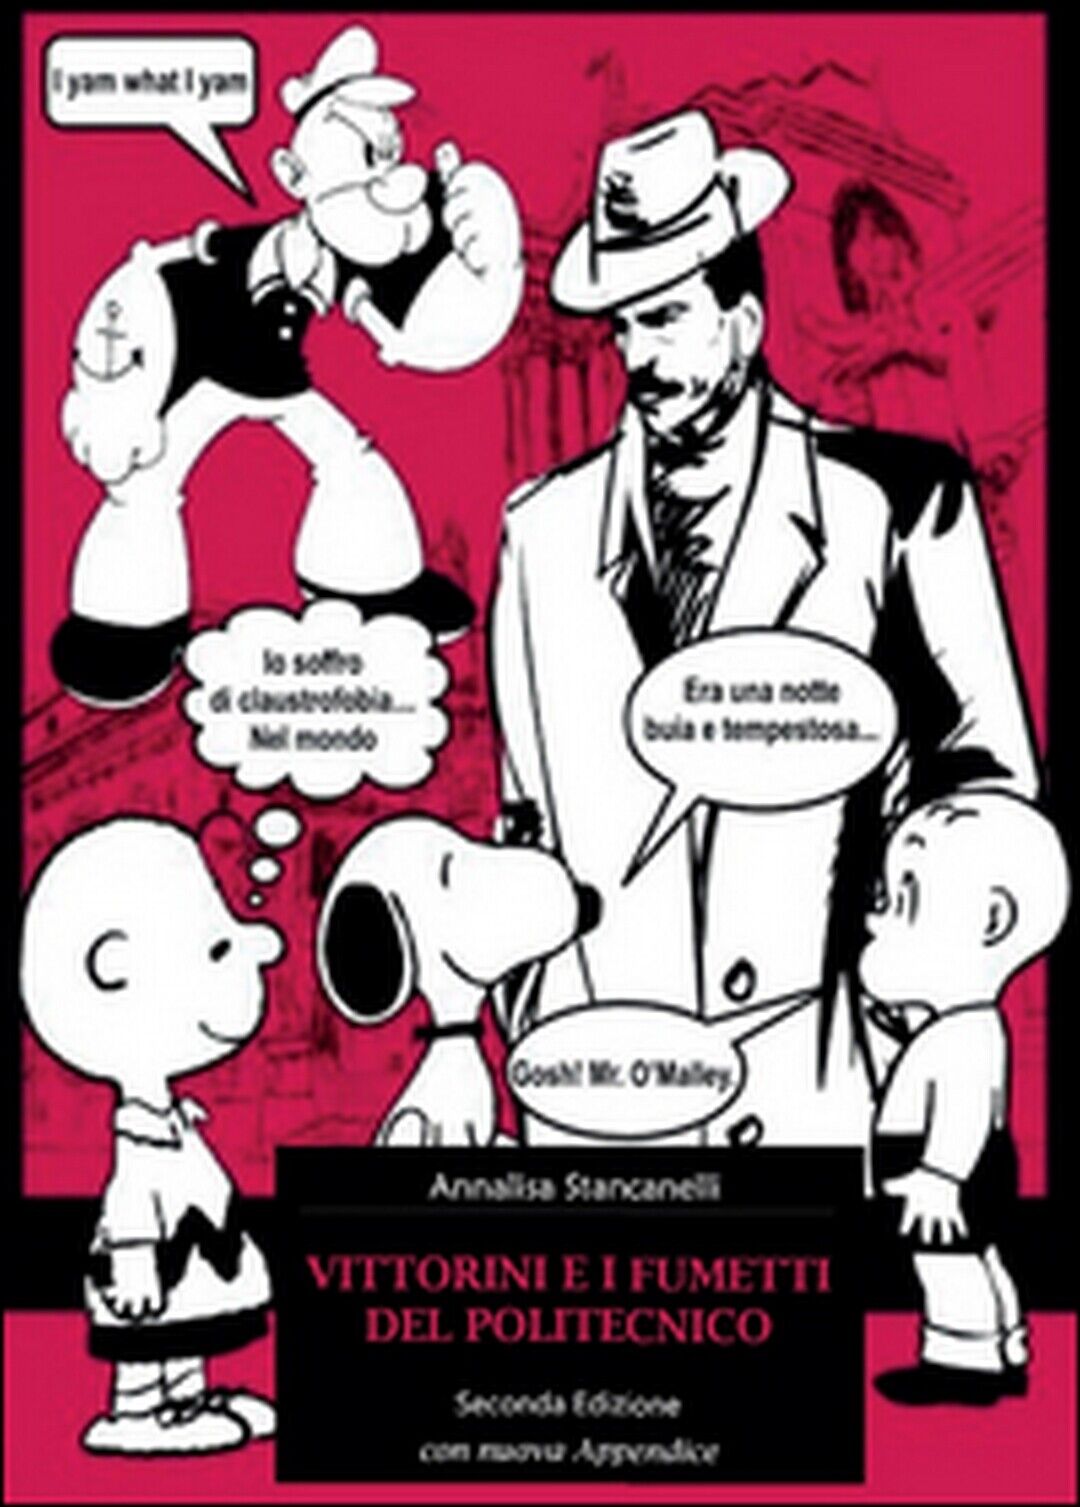 Vittorini e i fumetti del Politecnico, Annalisa Stancanelli,  2015,  Youcanprint